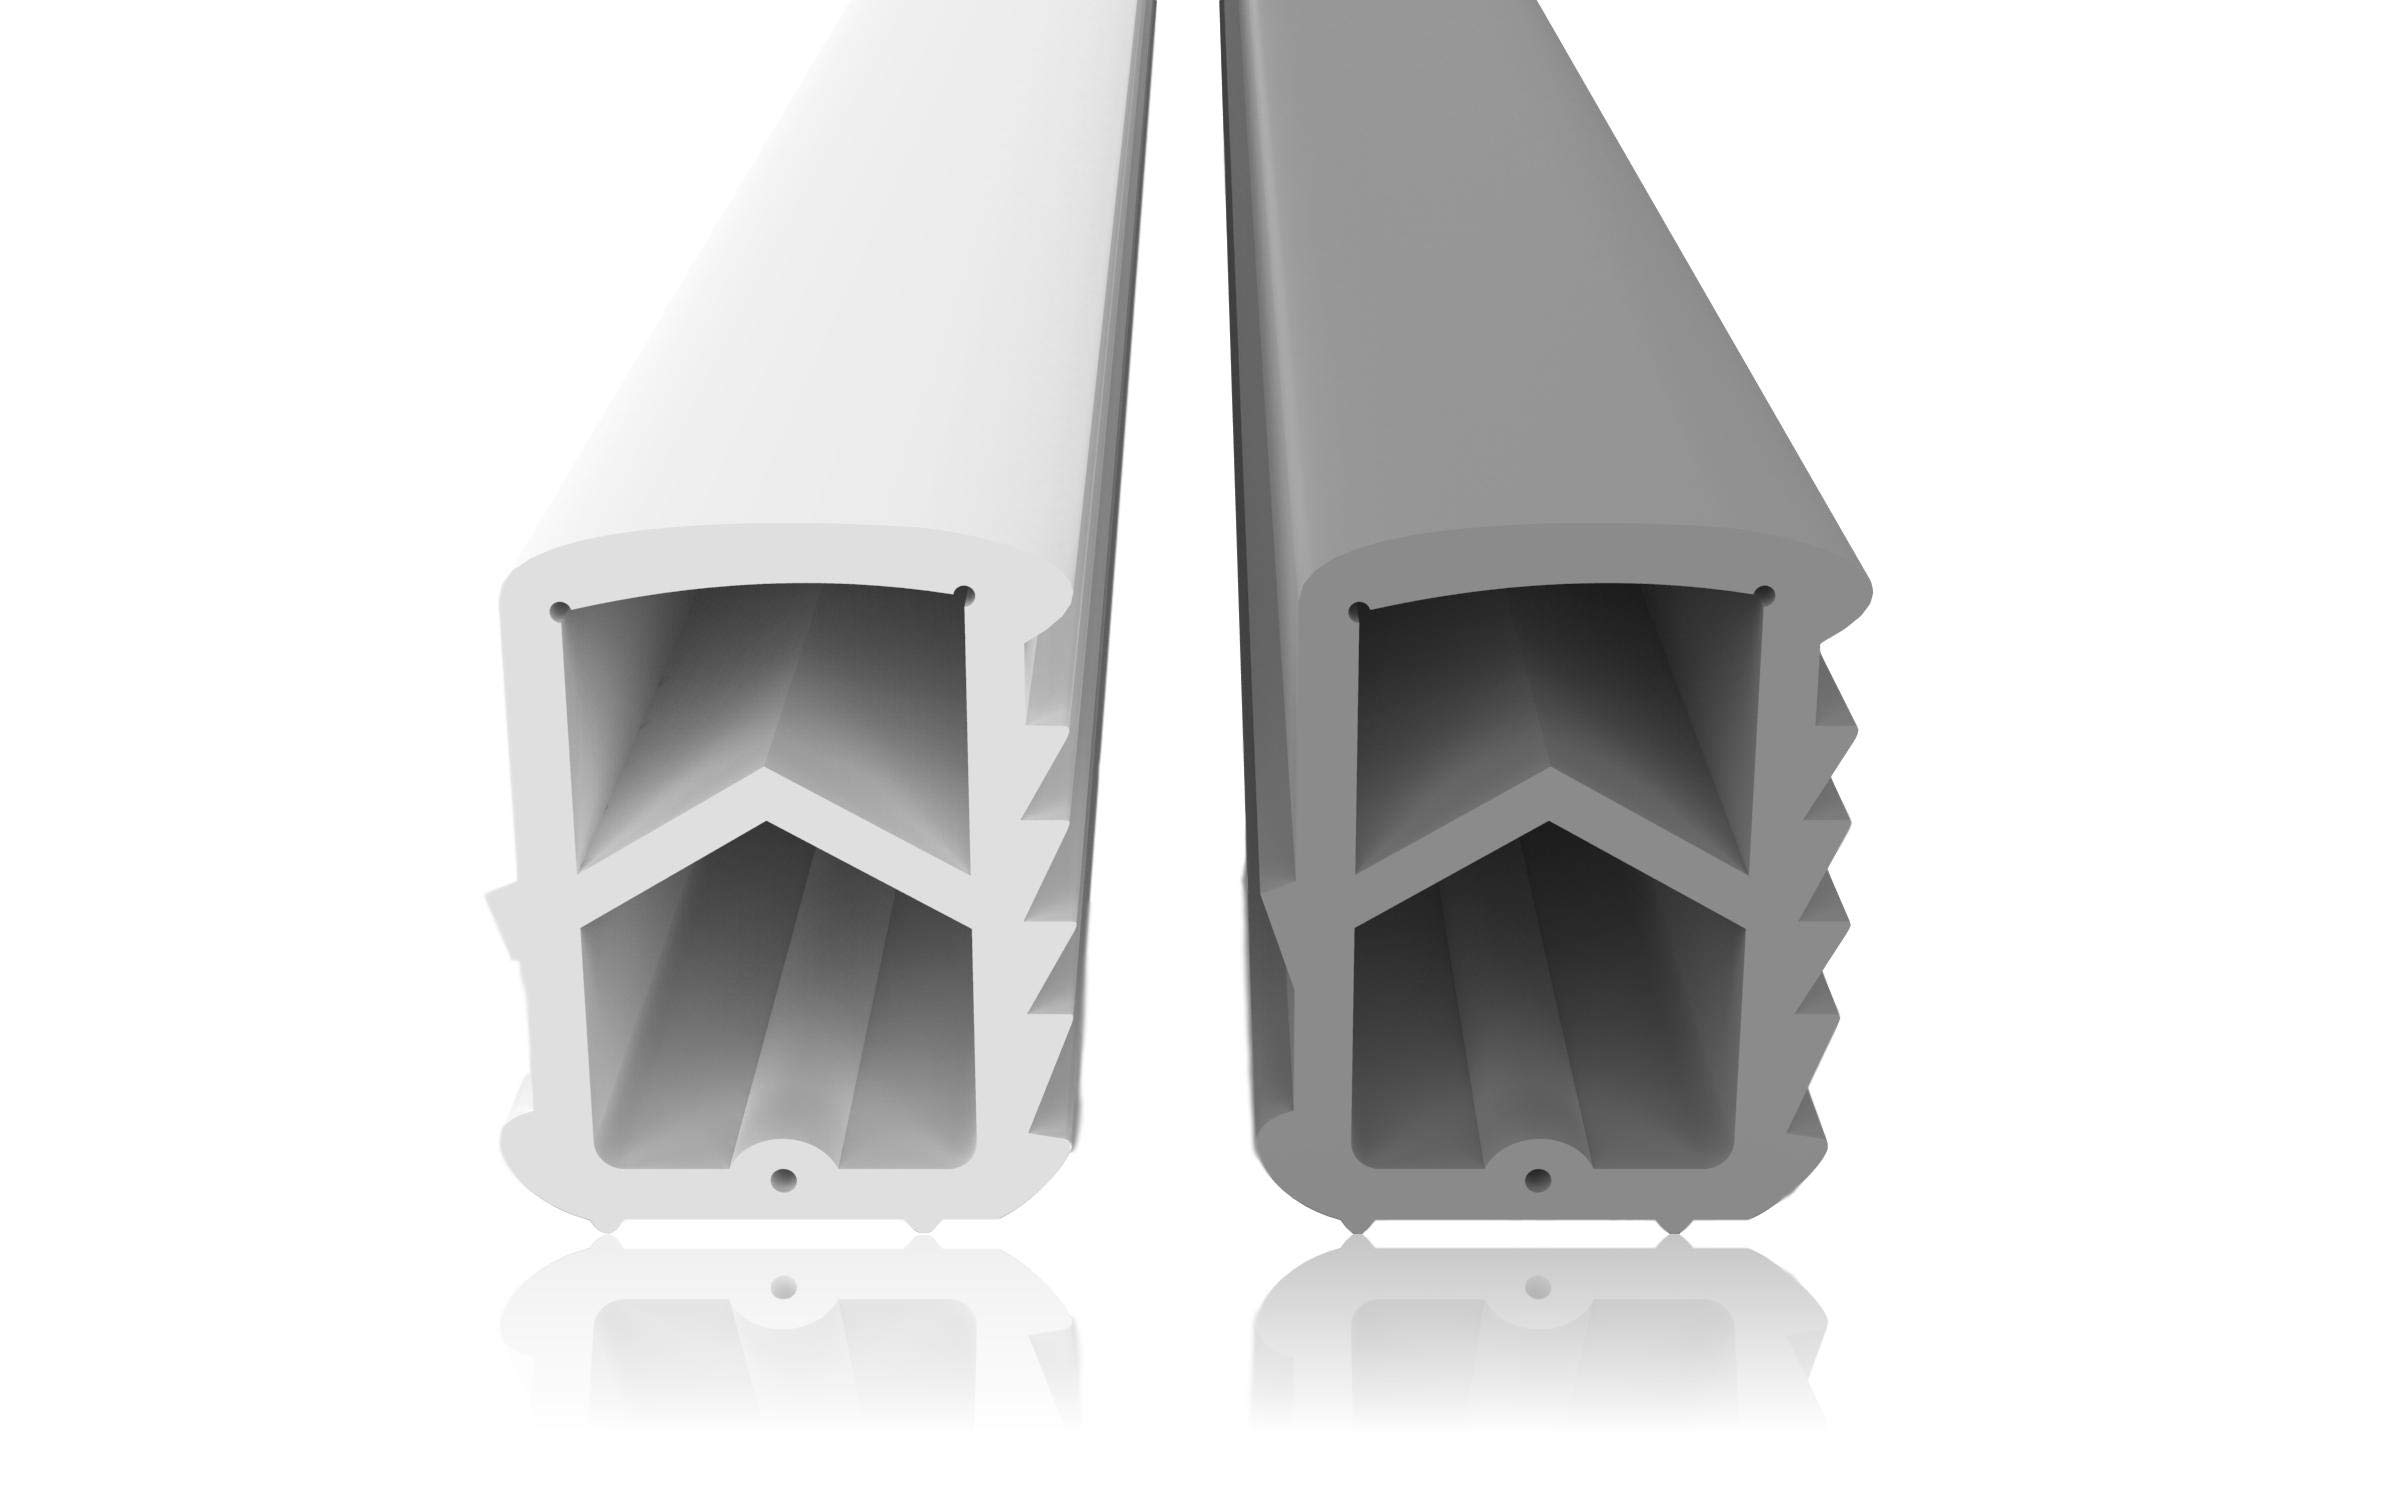 Stahlzargendichtung Weiß 5m - gegen Zugluft Lärm & Staub spart Heizkosten Dichtung Dichtungshöhe 16mm Dichtungsbreite 12mm Falz Türdichtung (Weiss 5m)